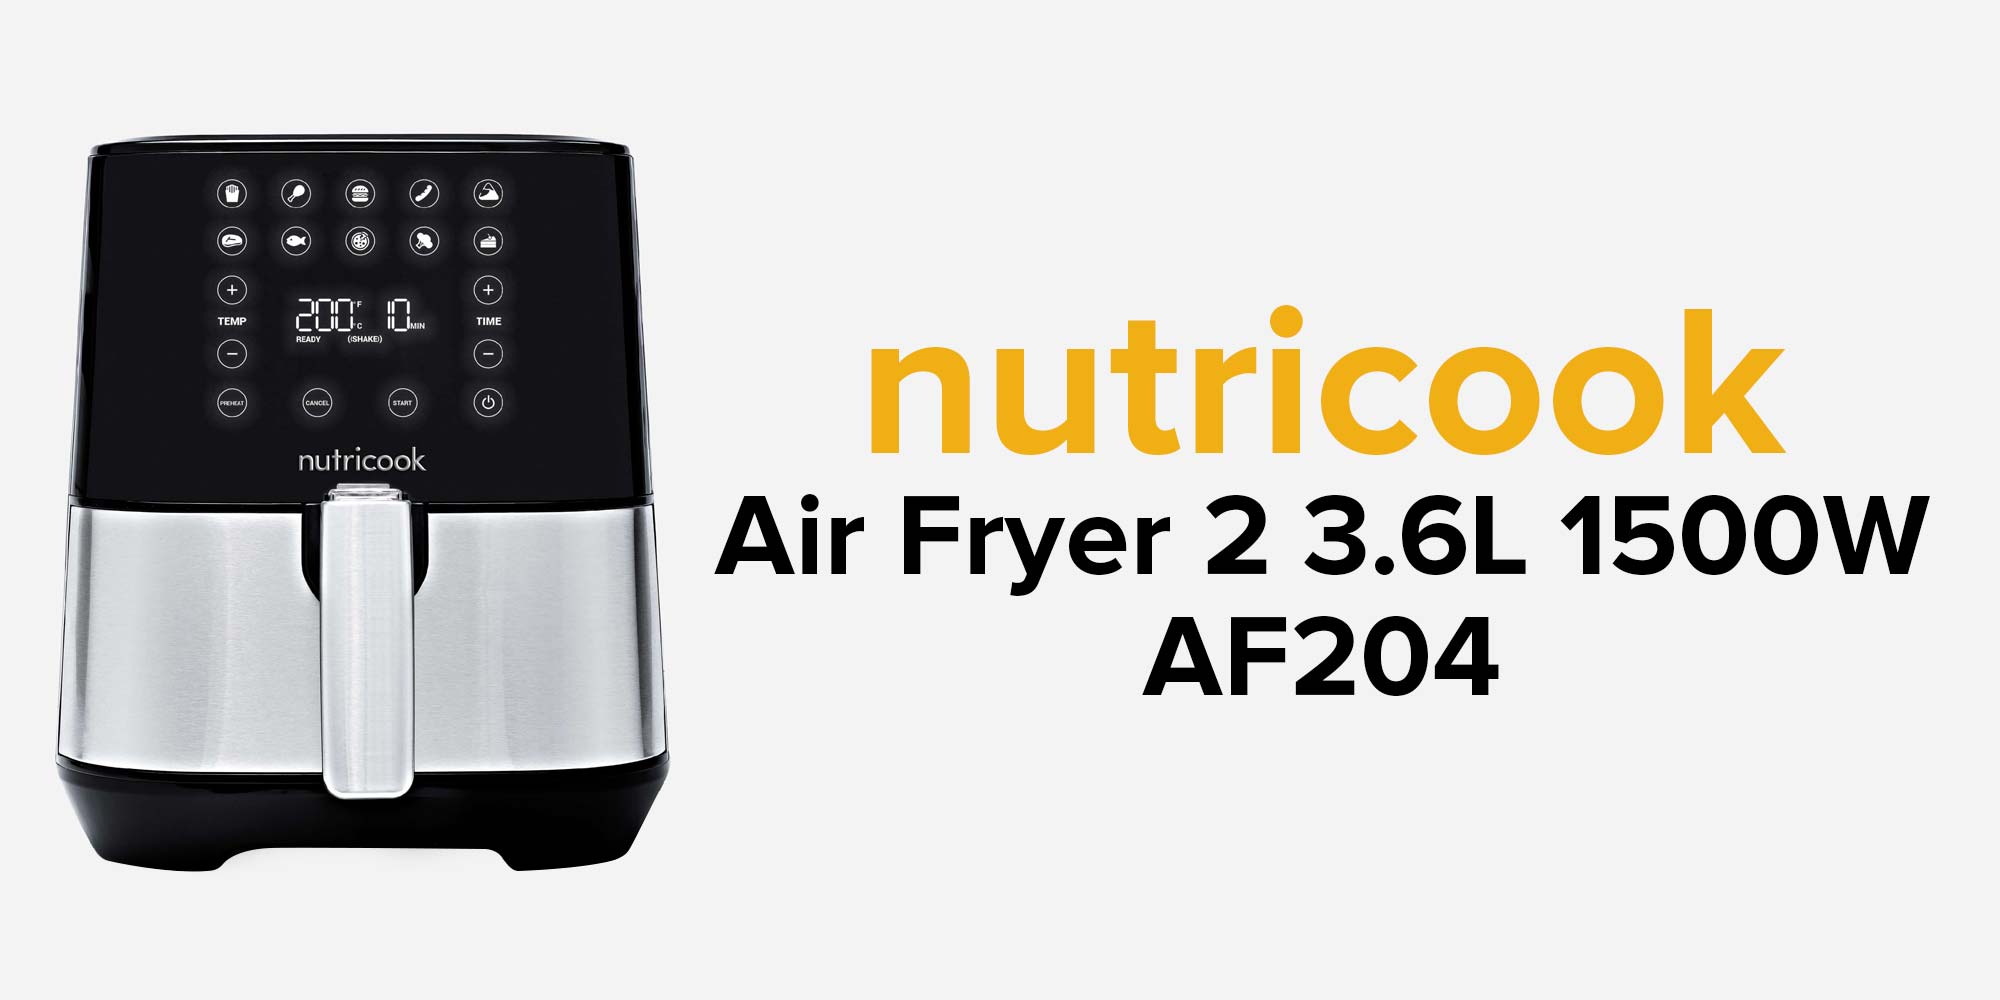 Buy Nutricook Air Fryer 2, NC-AF205K (5.5 L) Online in Dubai & the UAE